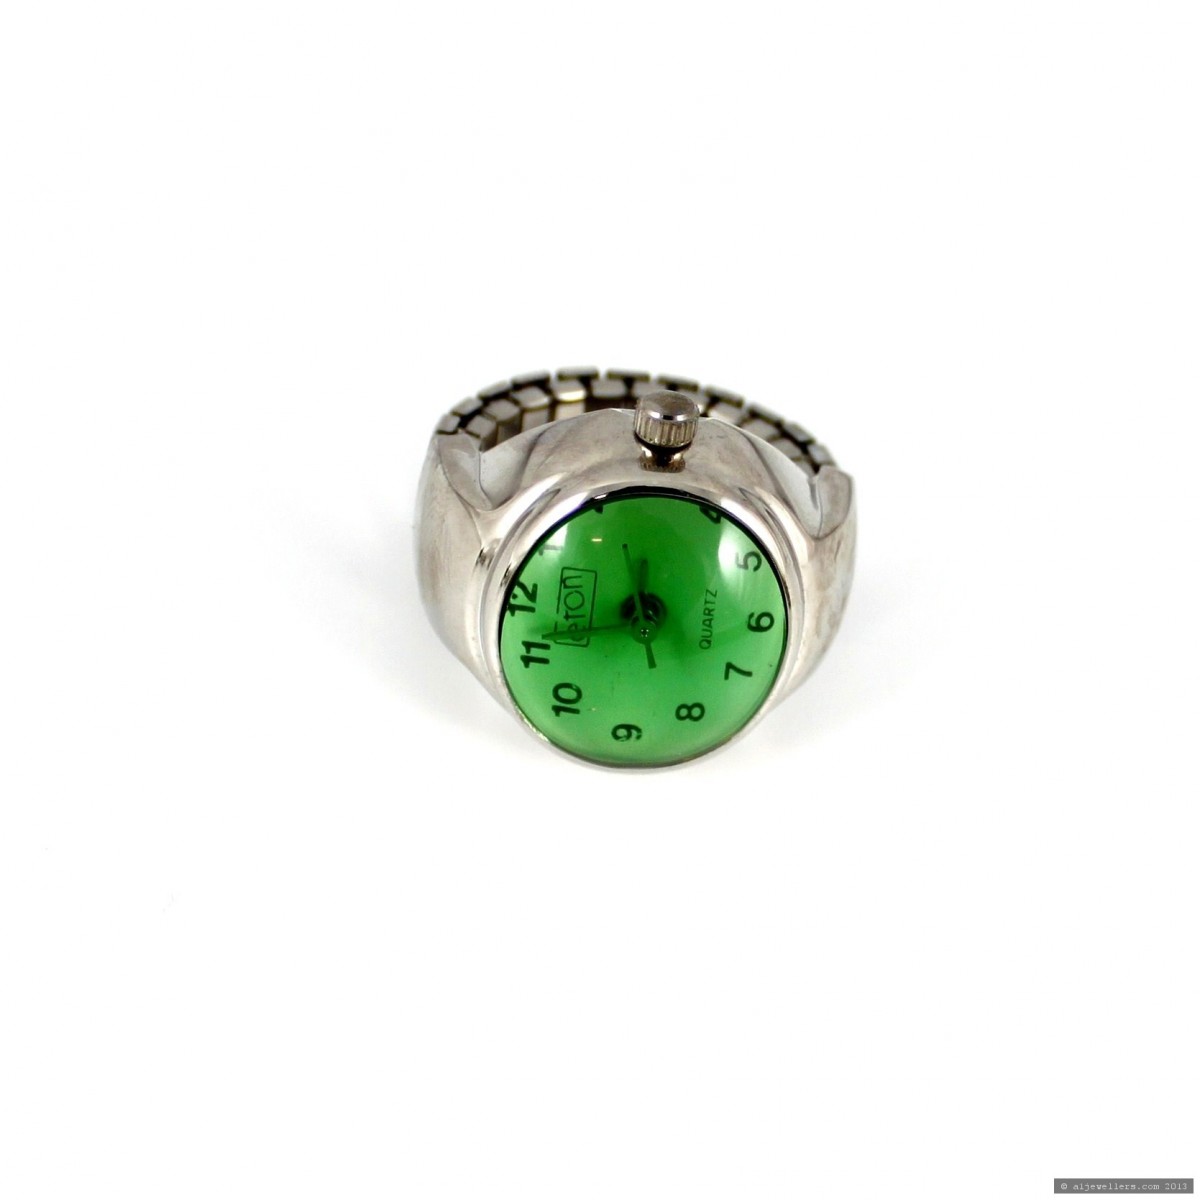 Eton Ladies Qtz Ring Watch - Green